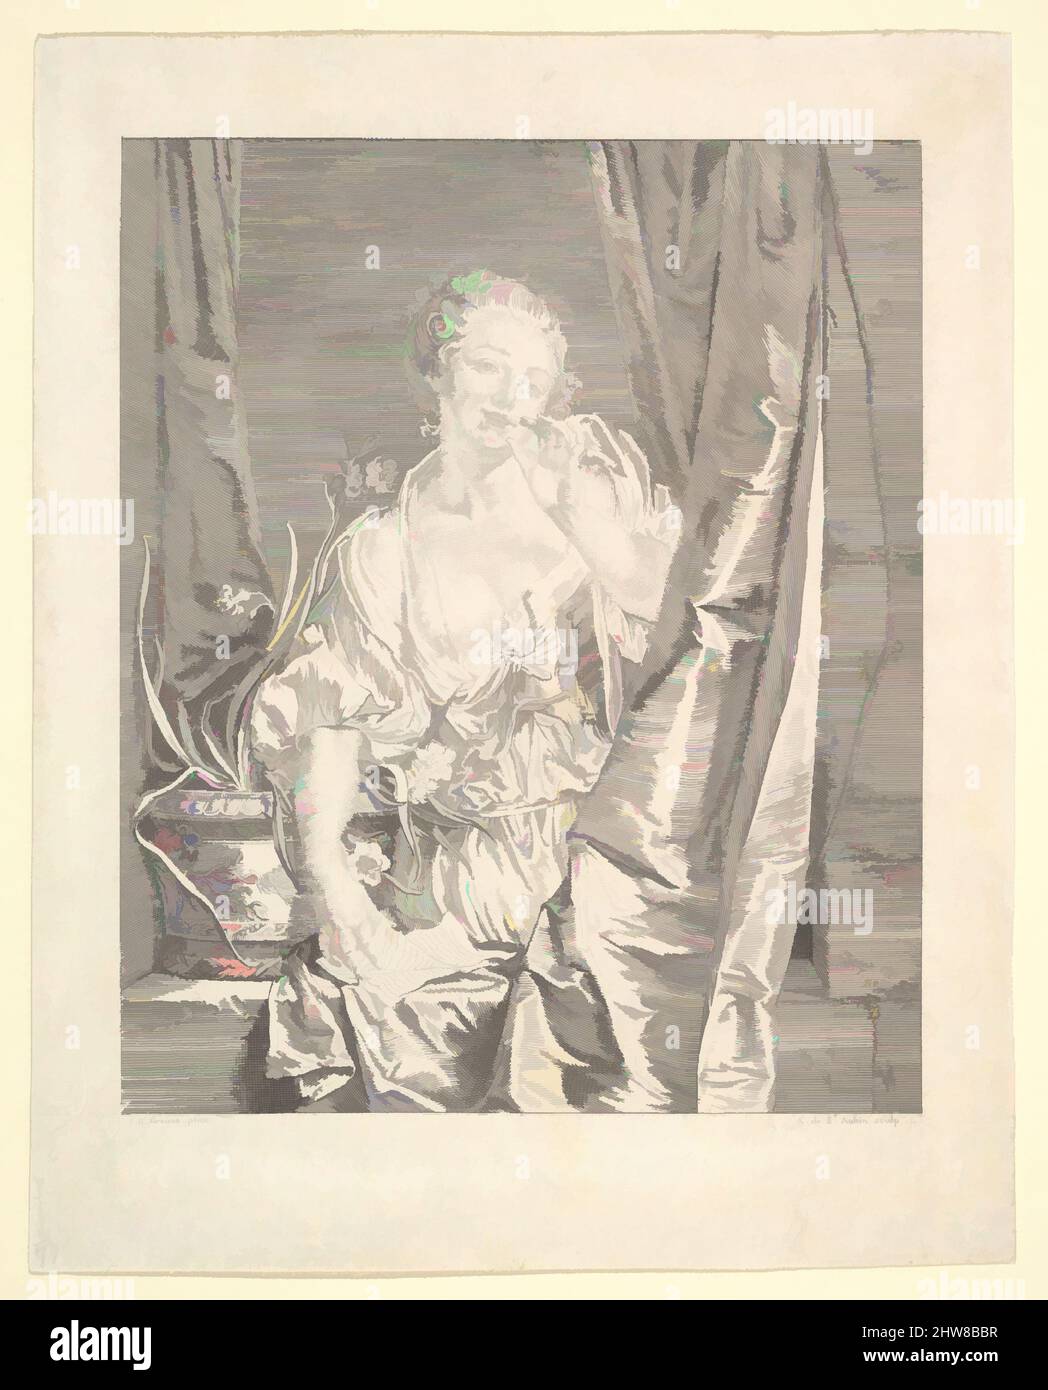 Arte ispirata da le Baiser Envoyé (Blowing a Kiss), incisione; primo stato di cinque (Bocher), foglio: 8 1/4 x 6 5/8 pollici. (21 x 16,8 cm), stampe, Augustin de Saint-Aubin (francese, Parigi 1736–1807 Parigi), dopo Jean-Baptiste Greuze (francese, Tournus 1725–1805 Parigi), Luigi XVI si trova tra, opere classiche modernizzate da Artotop con un tuffo di modernità. Forme, colore e valore, impatto visivo accattivante sulle emozioni artistiche attraverso la libertà delle opere d'arte in modo contemporaneo. Un messaggio senza tempo che persegue una nuova direzione selvaggiamente creativa. Artisti che si rivolgono al supporto digitale e creano l'NFT Artotop Foto Stock